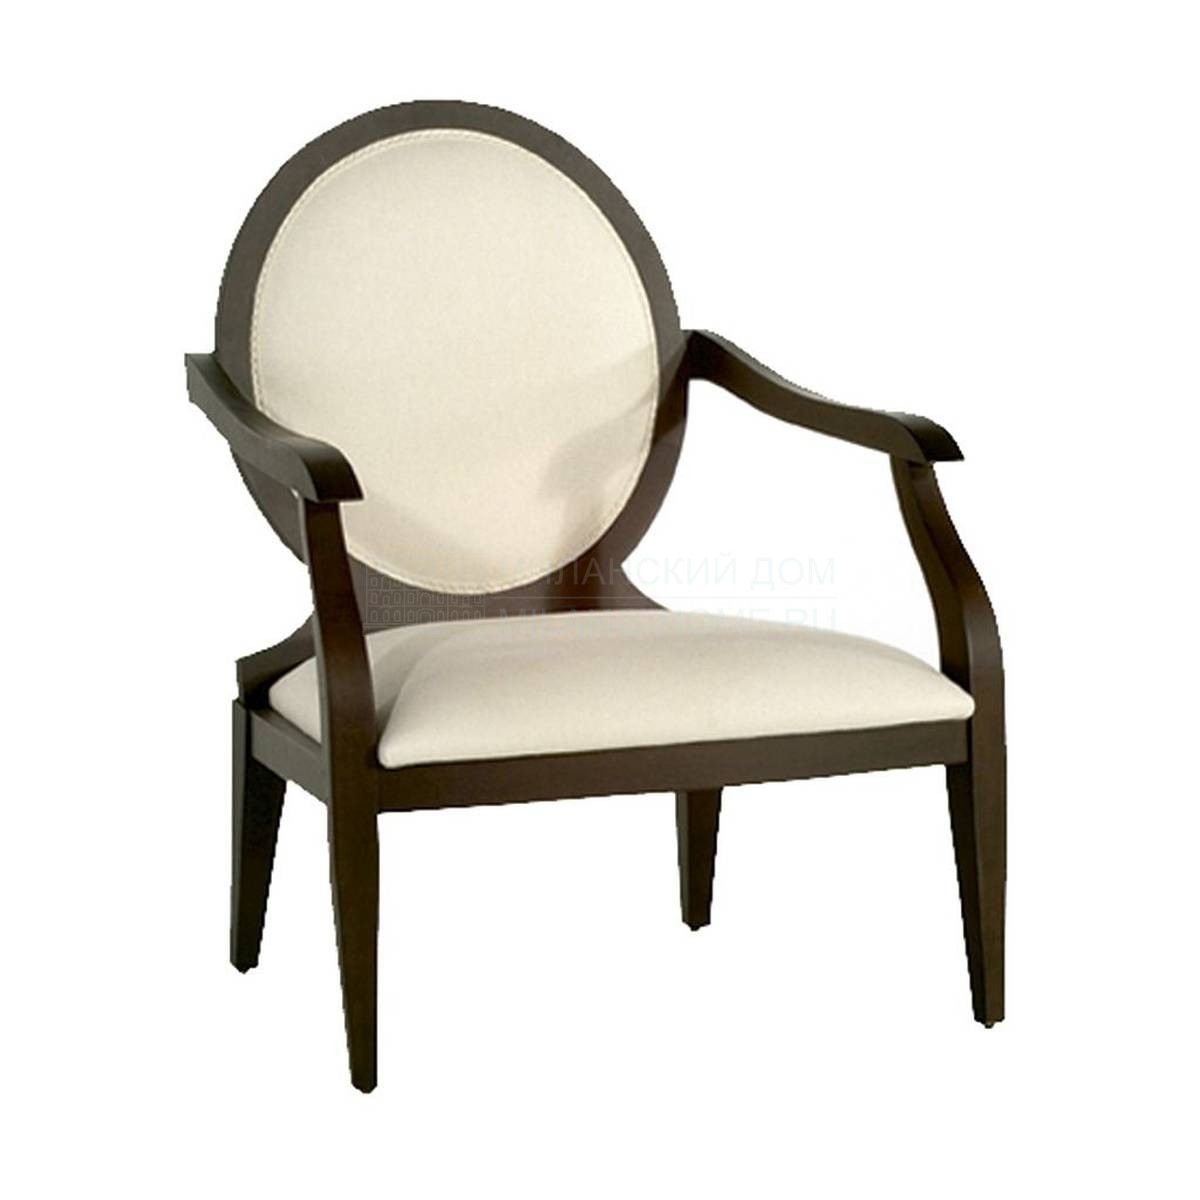 Кресло M-3345 armchair из Испании фабрики GUADARTE